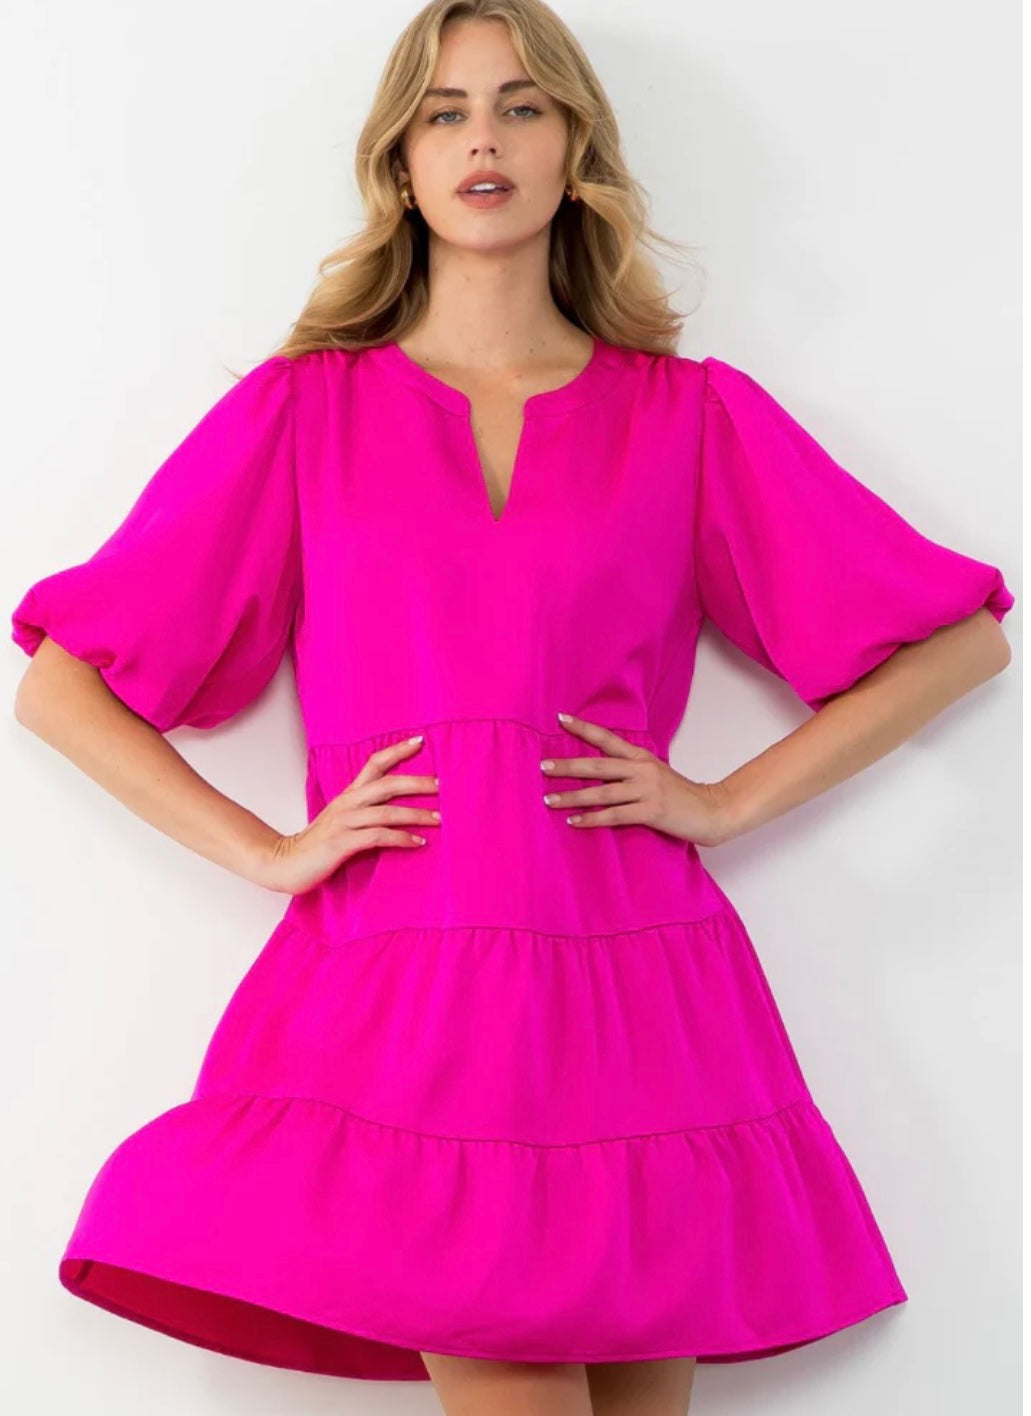 Hotty Pink Dress